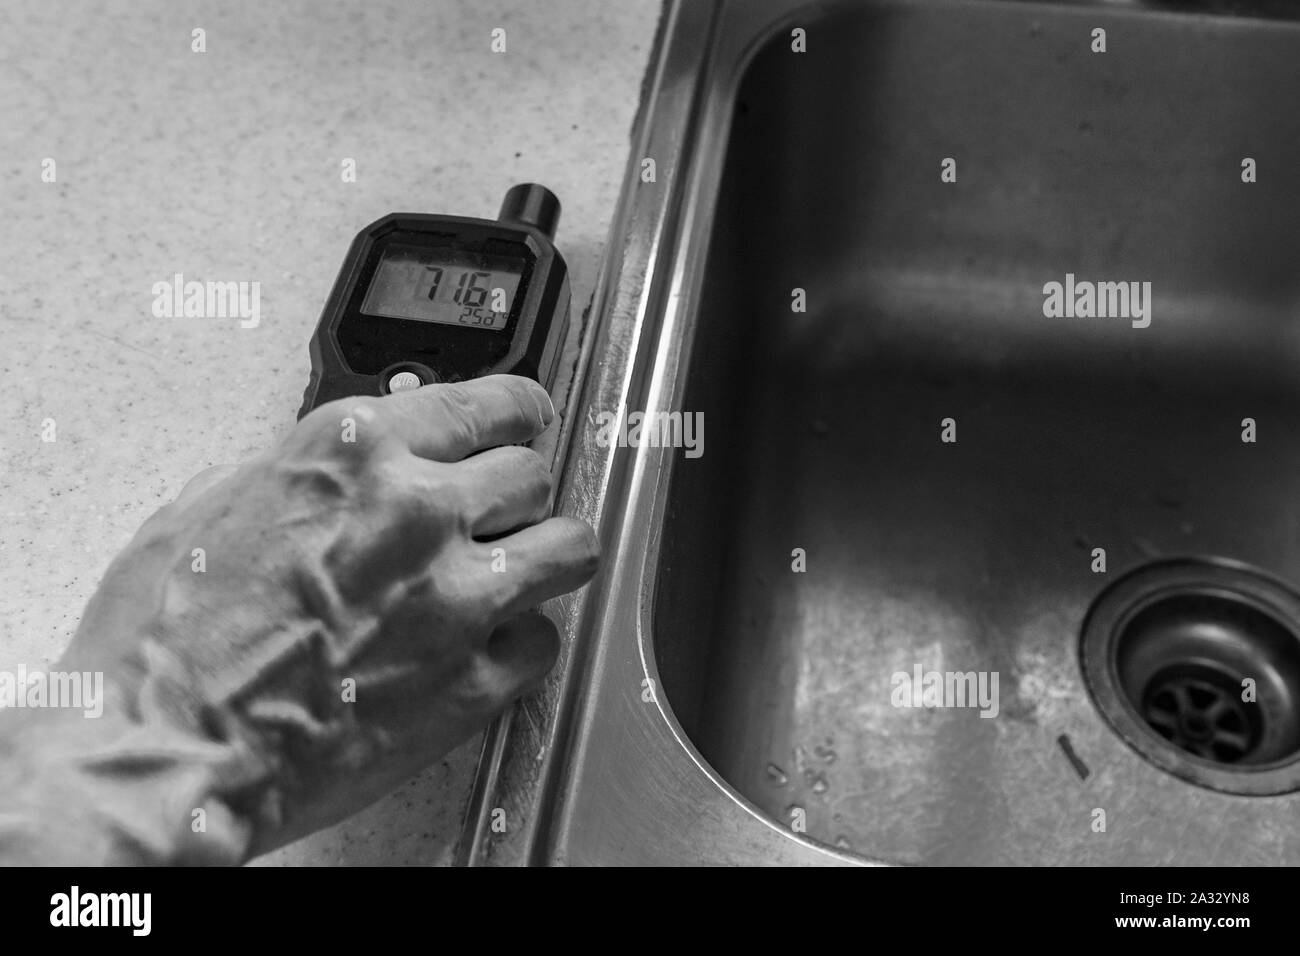 Un gros plan et vue monochrome sur la main d'un évaluateur de la qualité de l'environnement intérieur, prendre des lectures sur un compteur électronique par un évier de cuisine. Banque D'Images